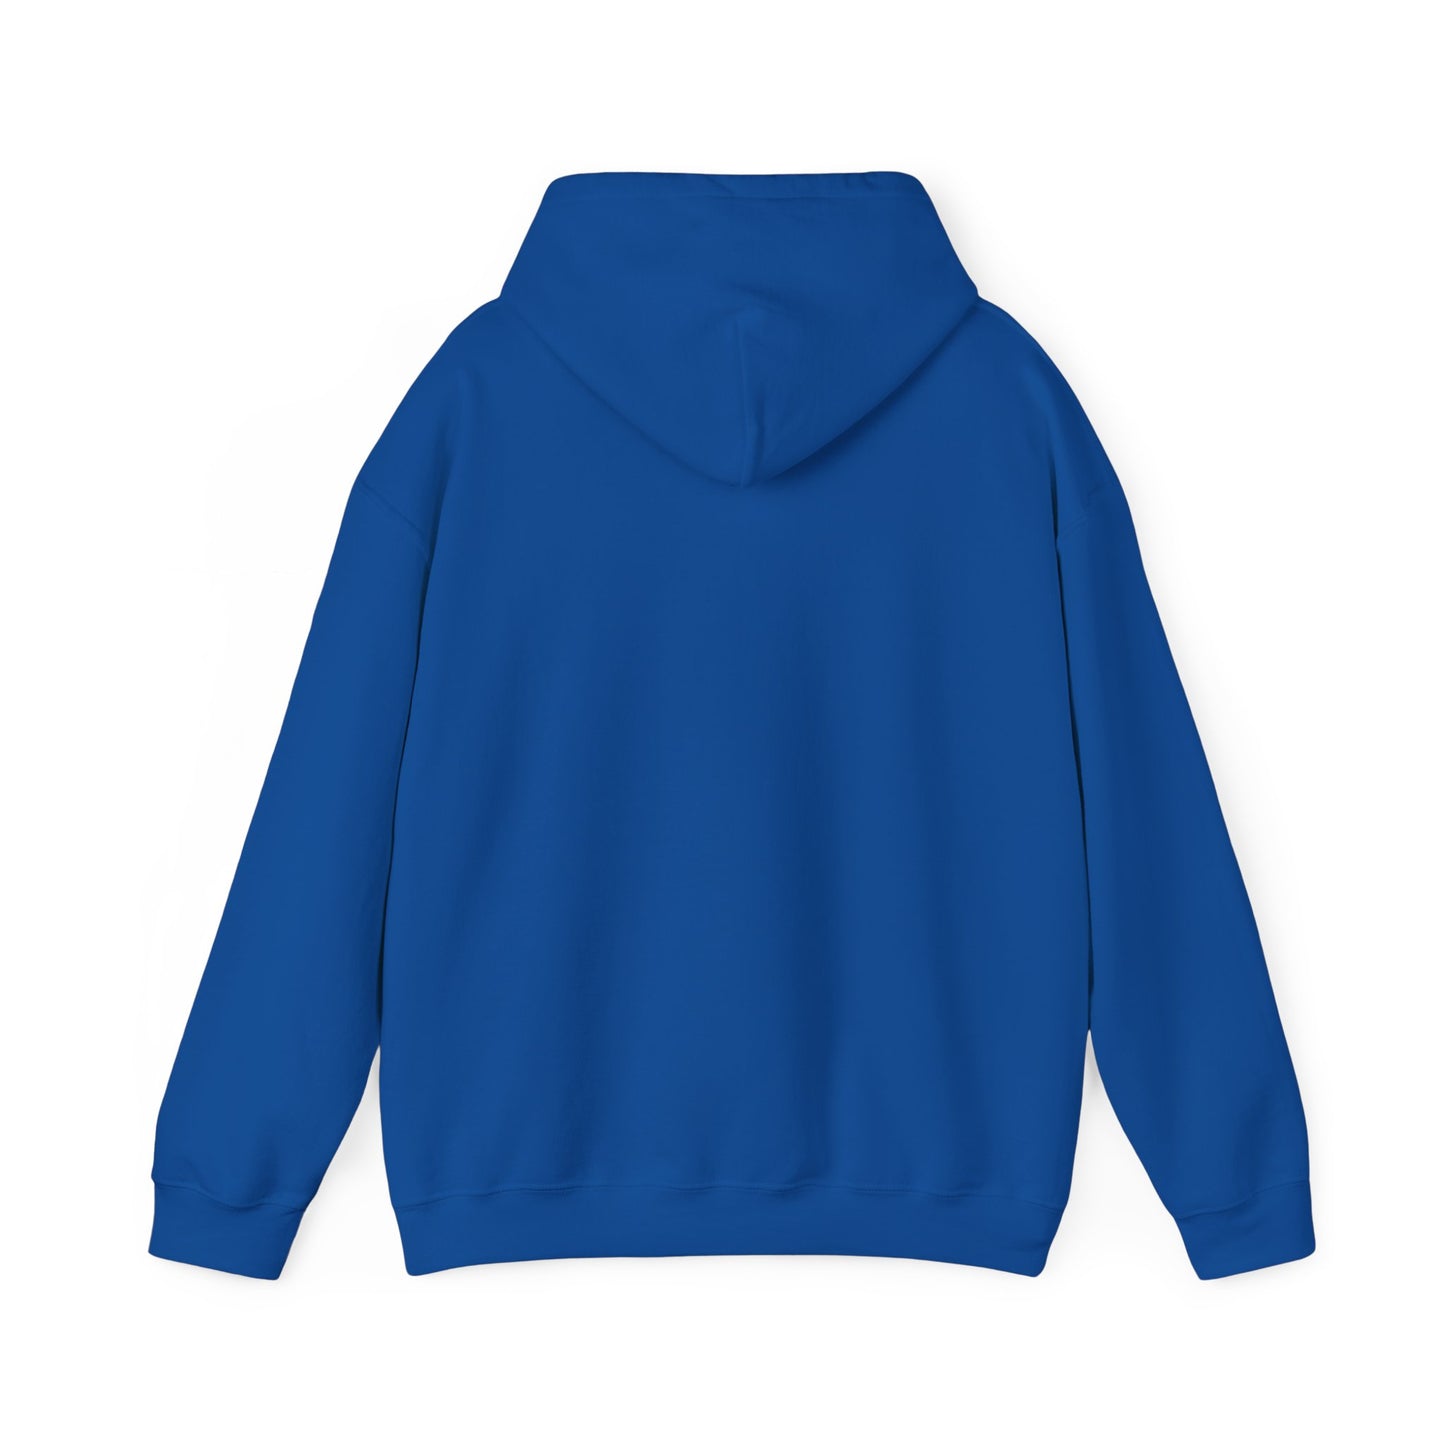 Mountain Morning Hooded Sweatshirt (Unisex)